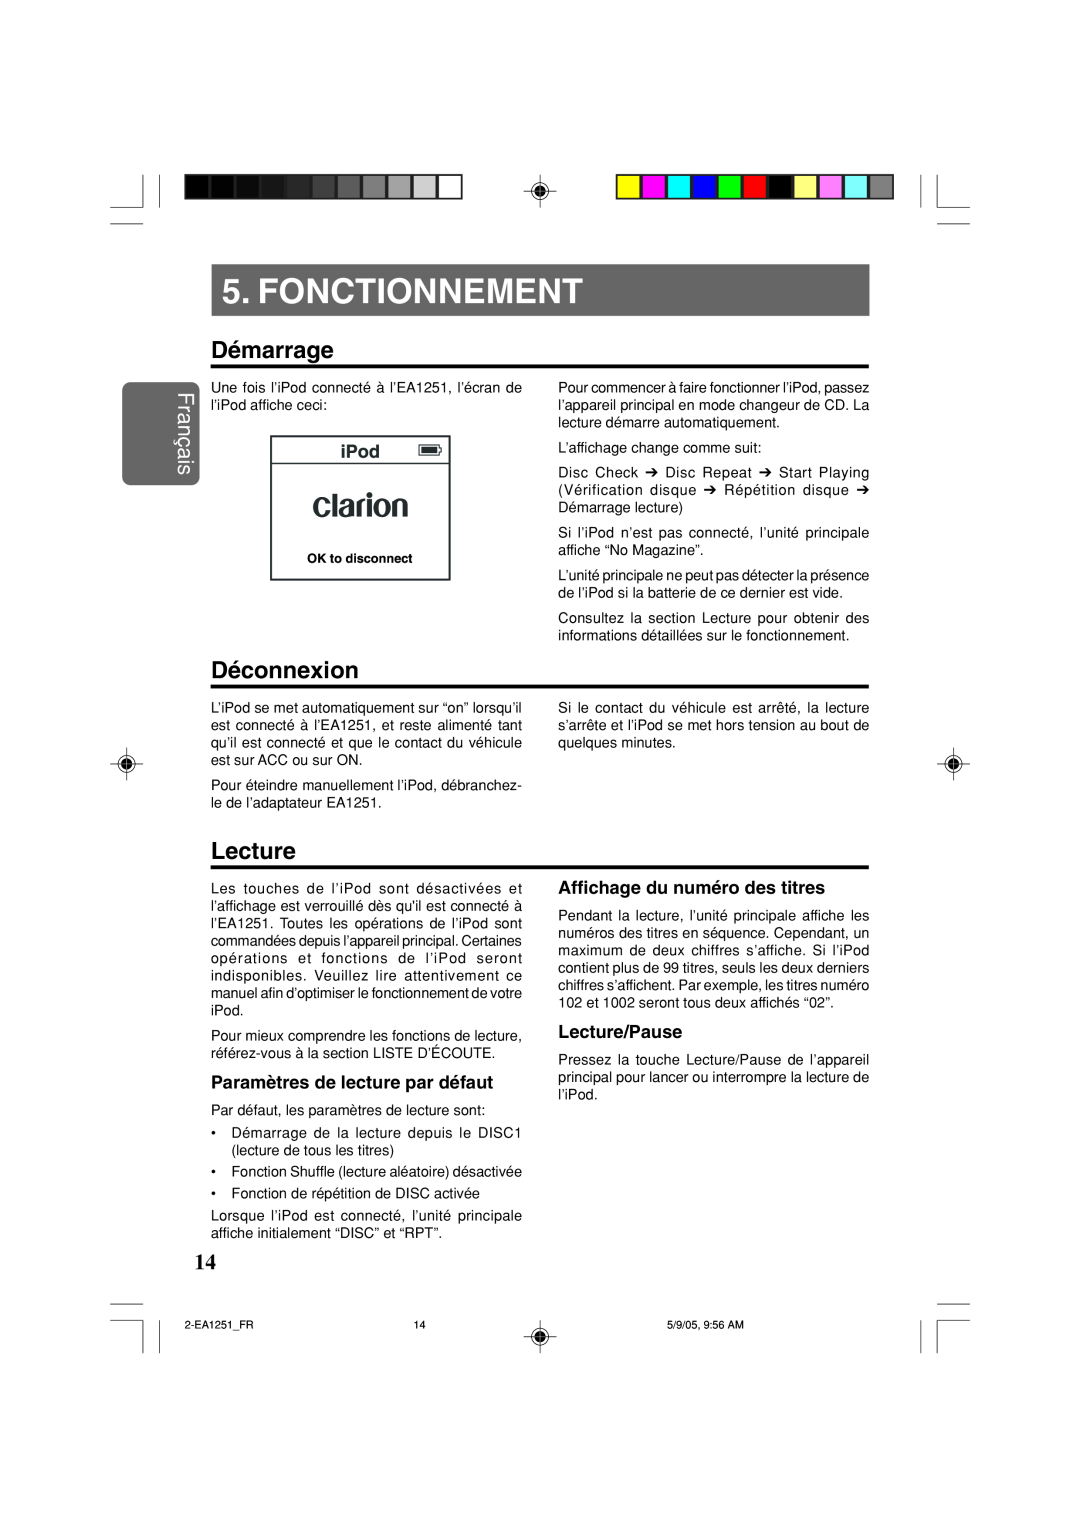 Clarion EA1251 Fonctionnement, Démarrage, Déconnexion, Paramètres de lecture par défaut, Lecture/Pause, Français 